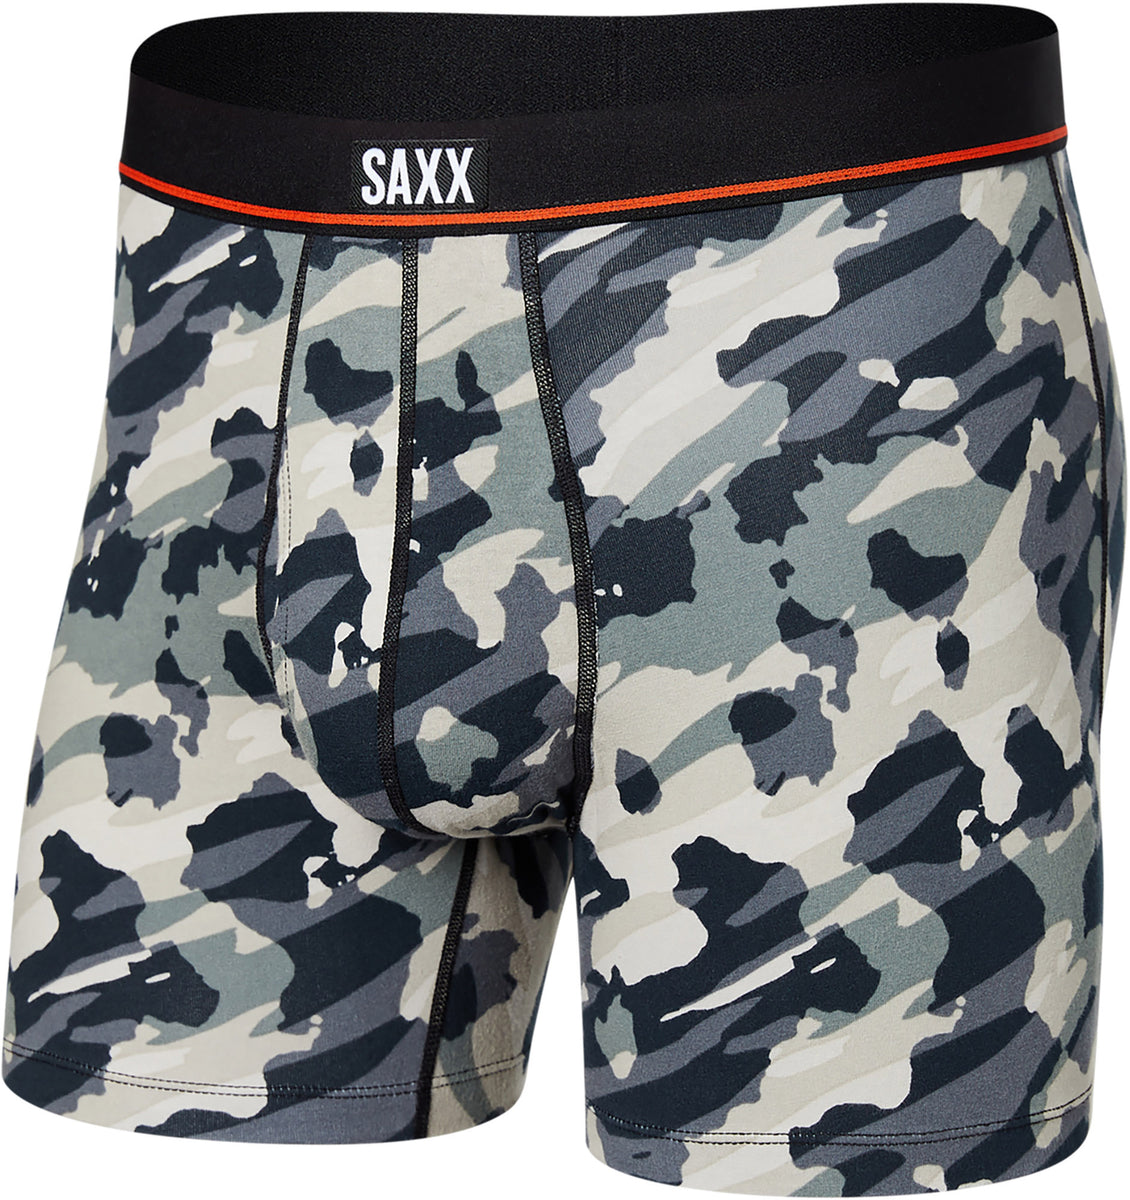 SAXX Men's Underwear - Non-Stop Stretch Cotton Boxer Brief - Import It All